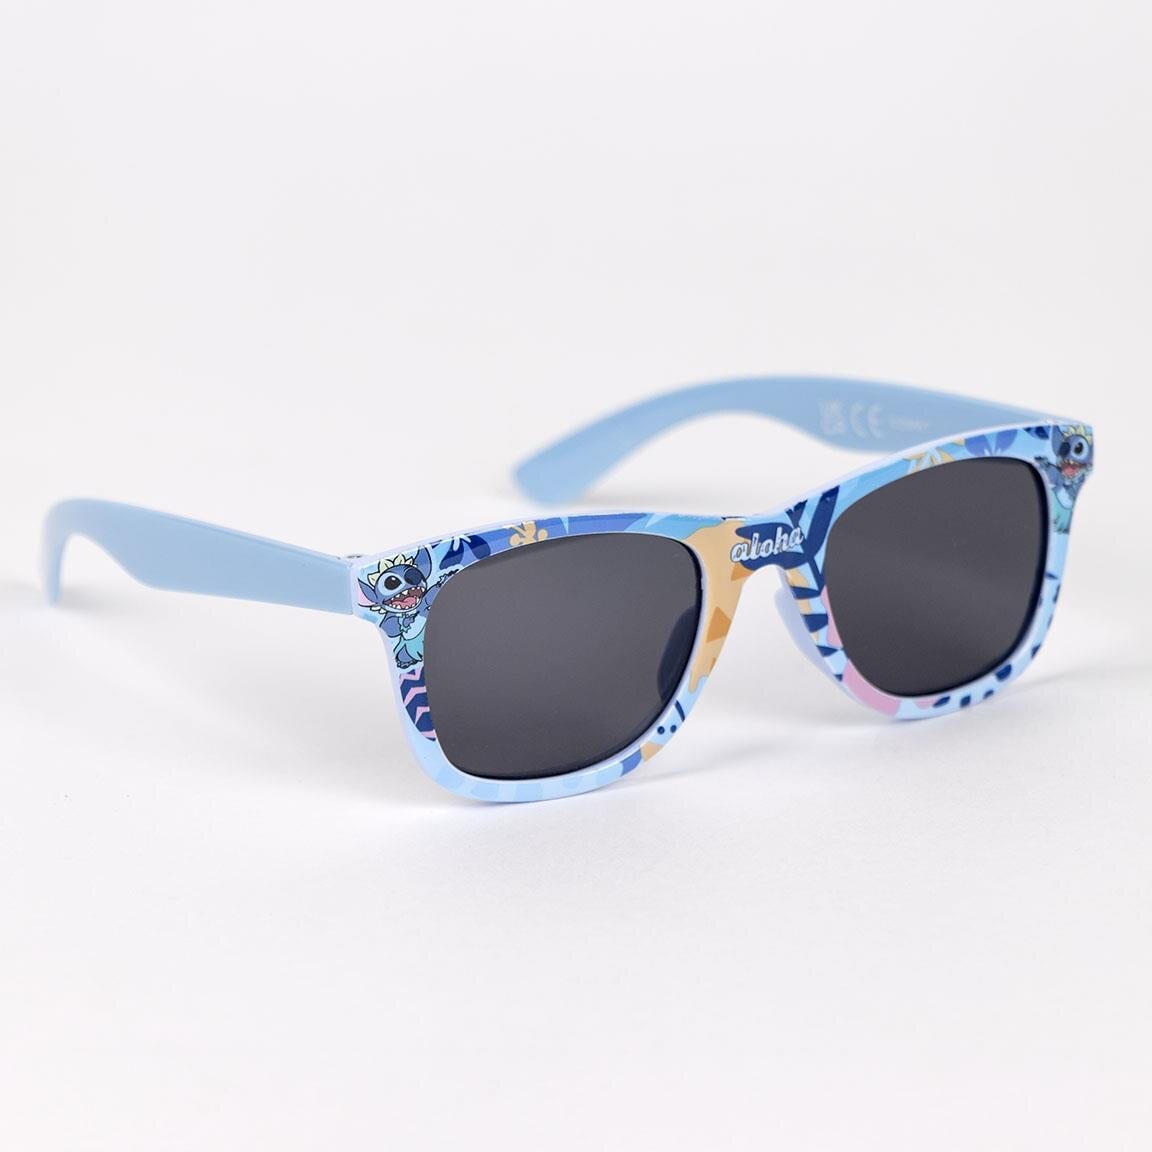 Lilo & Stitch - Caps og solbriller til barn